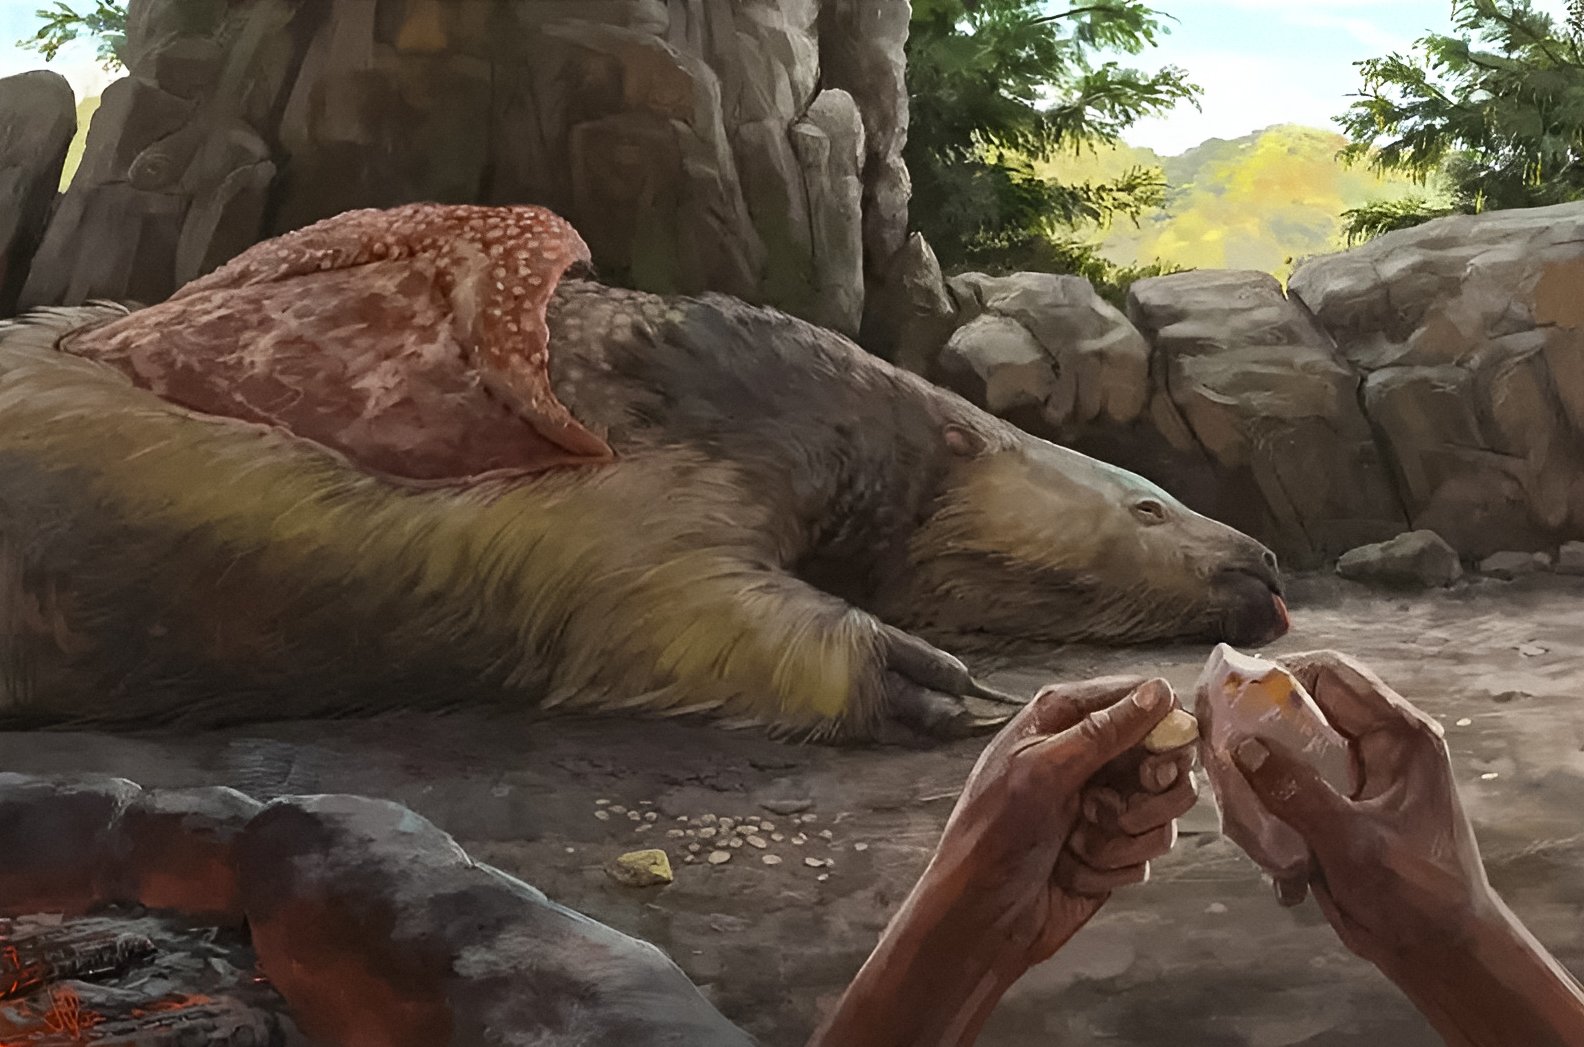 Луѓето биле во Јужна Америка пред најмалку 25,000 години, античките привезоци од коски откриваат 1